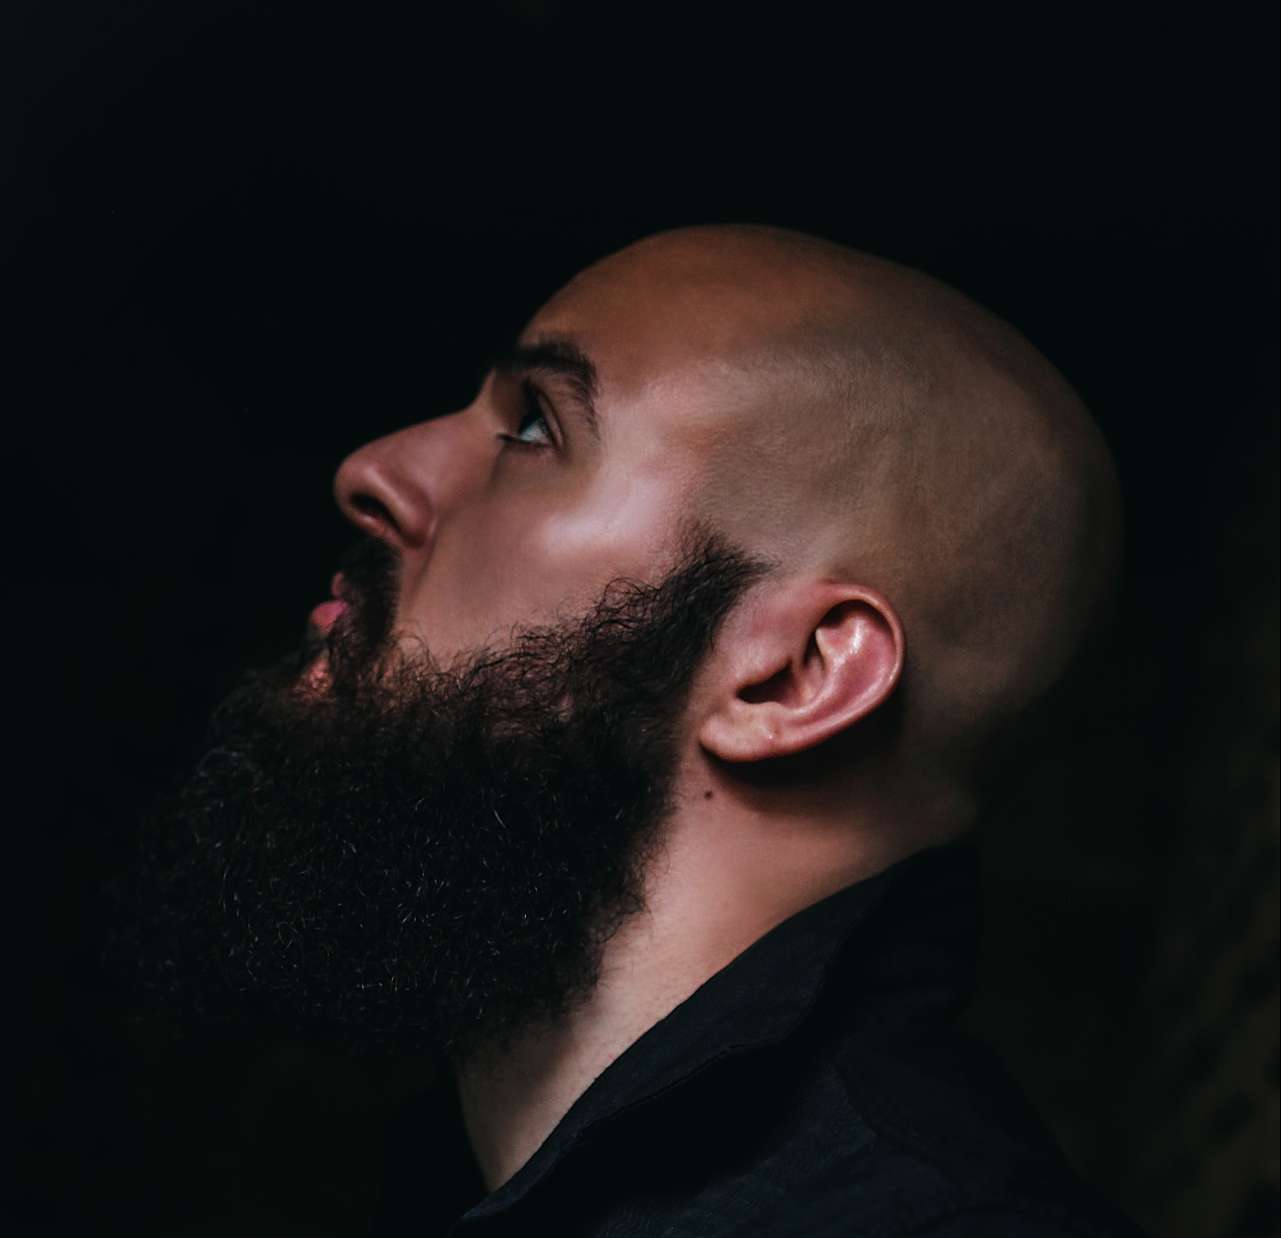 Does a beard look good with a bald head?